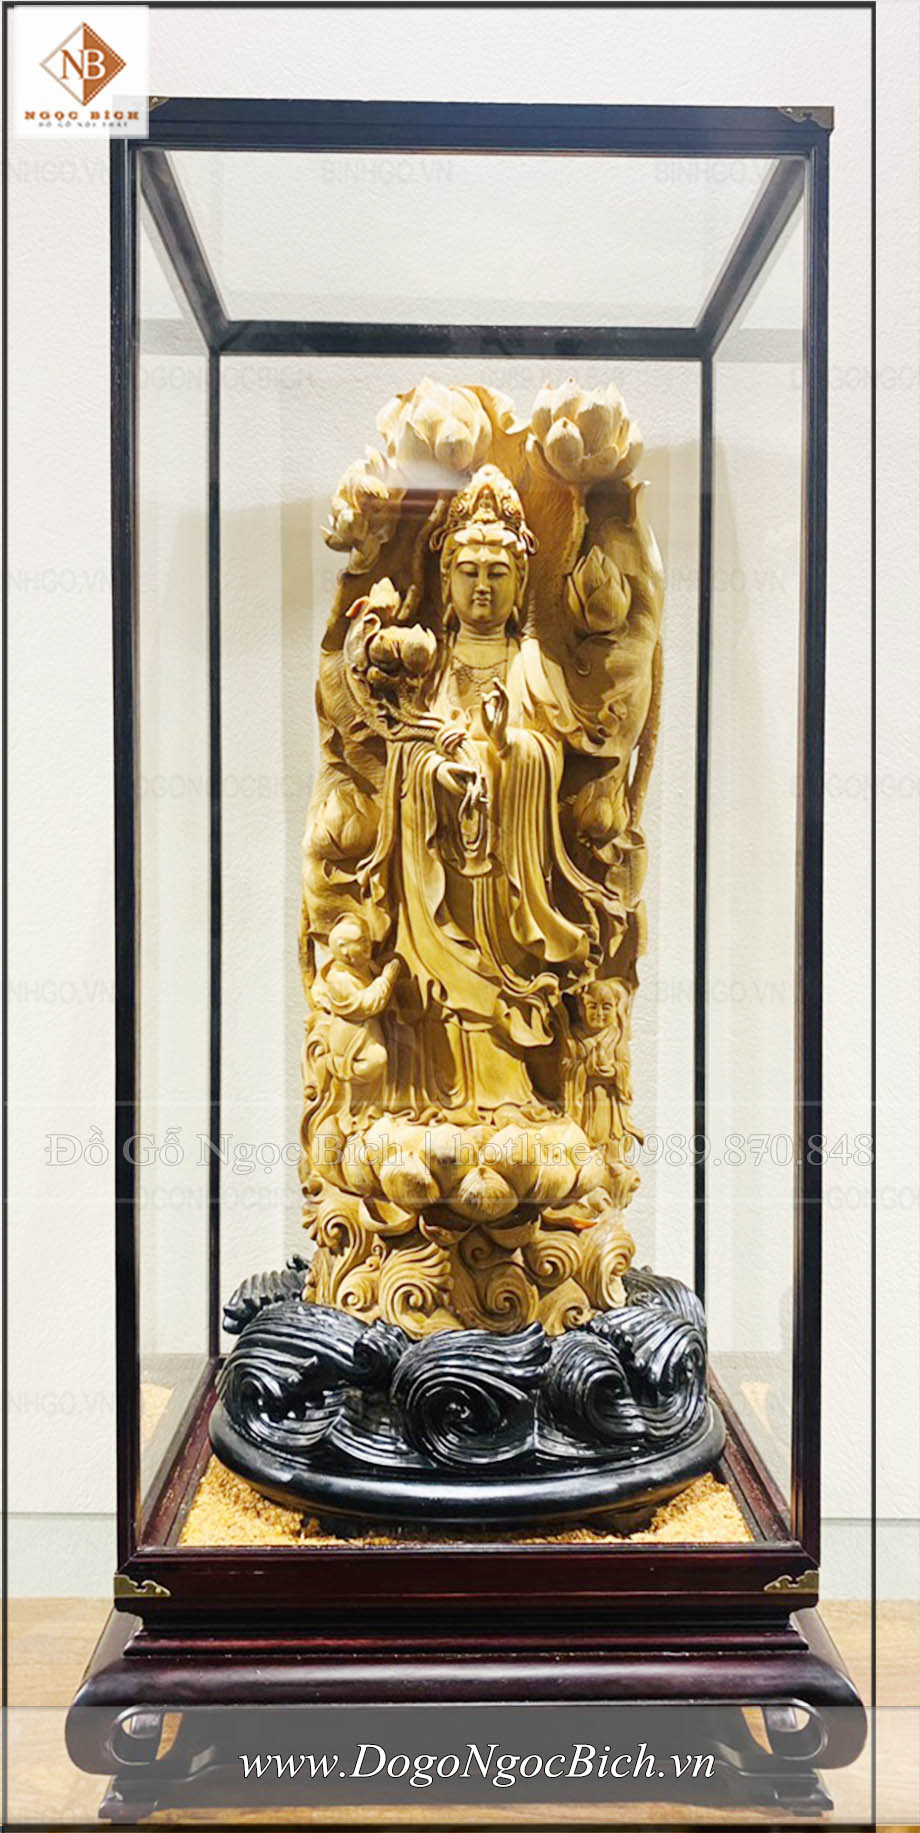 Tác phẩm tượng Quan Thế Âm Bồ Tát - Gỗ Hoàng Đàn Tuyết được để trang trọng trong một tủ kính làm bằng gỗ Hương Quý hiếm